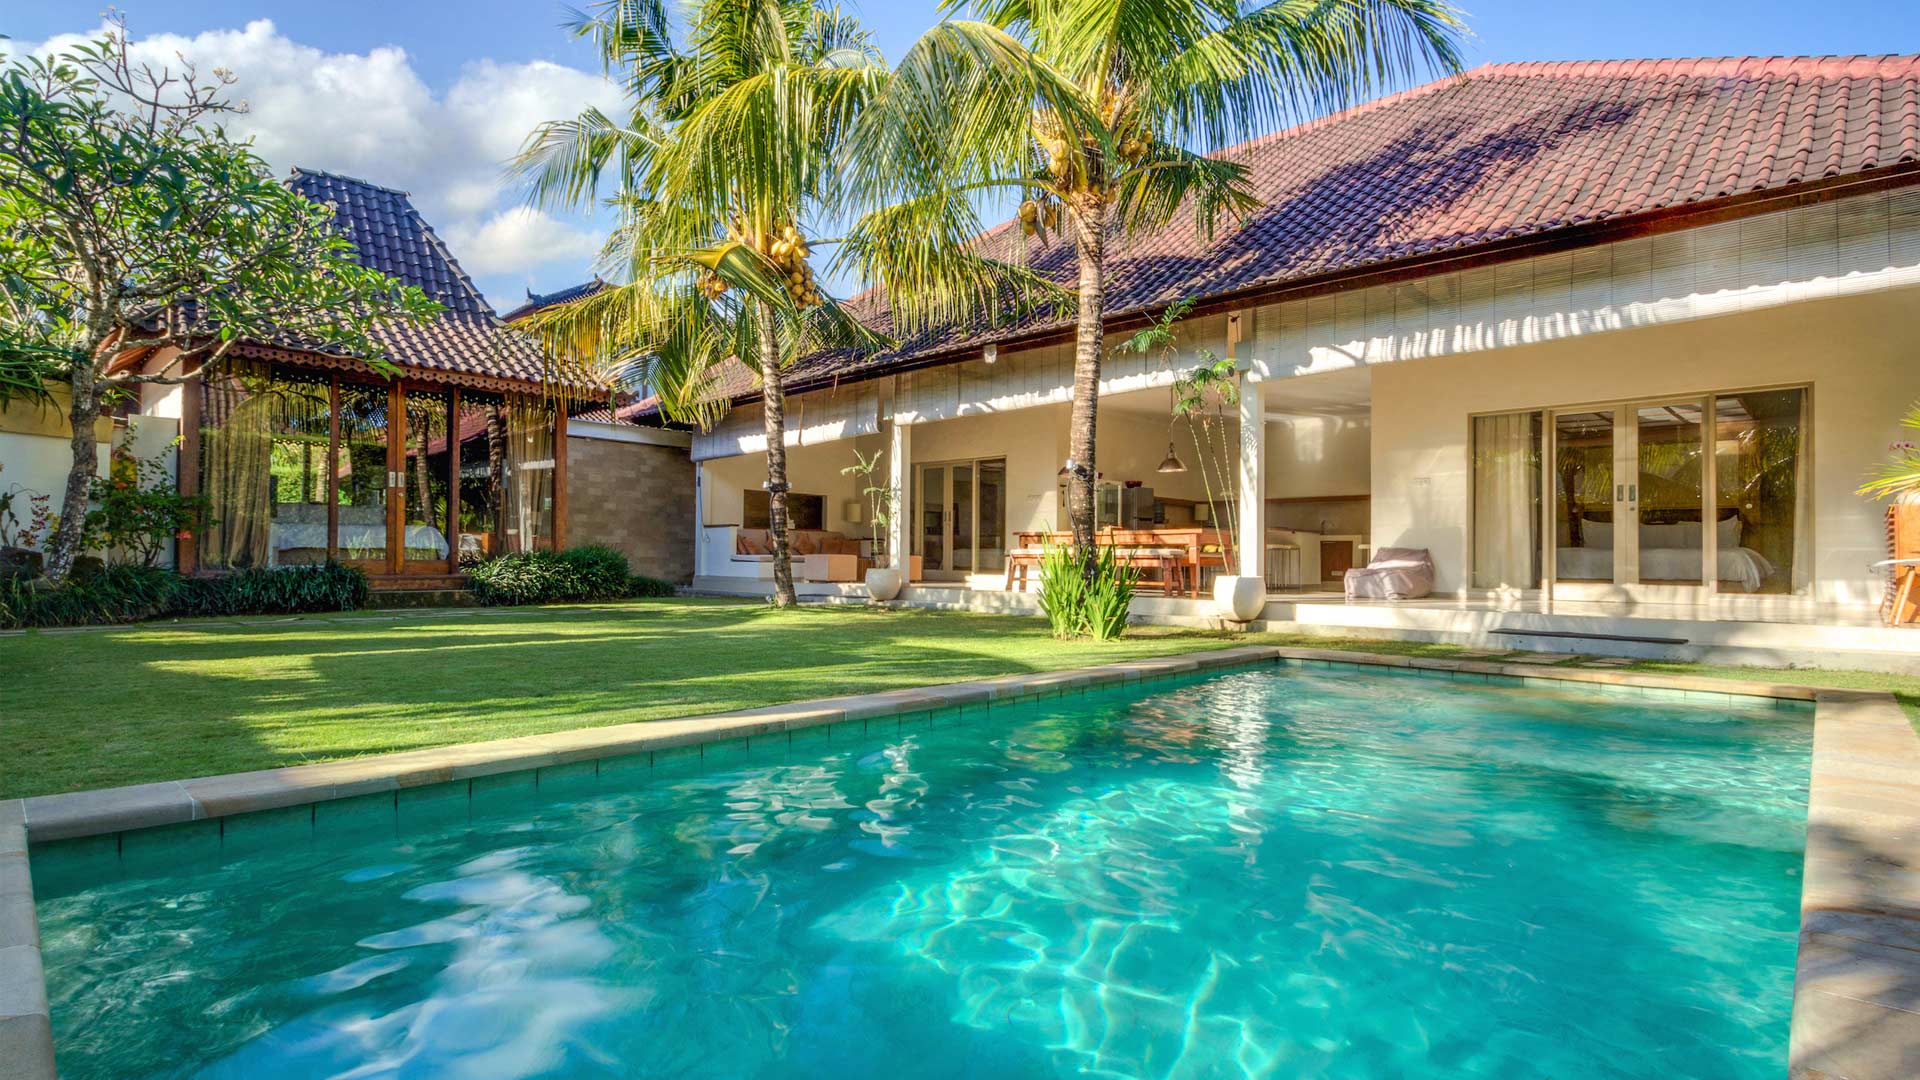 Location de Villas  priv es  Bali  en Fran ais